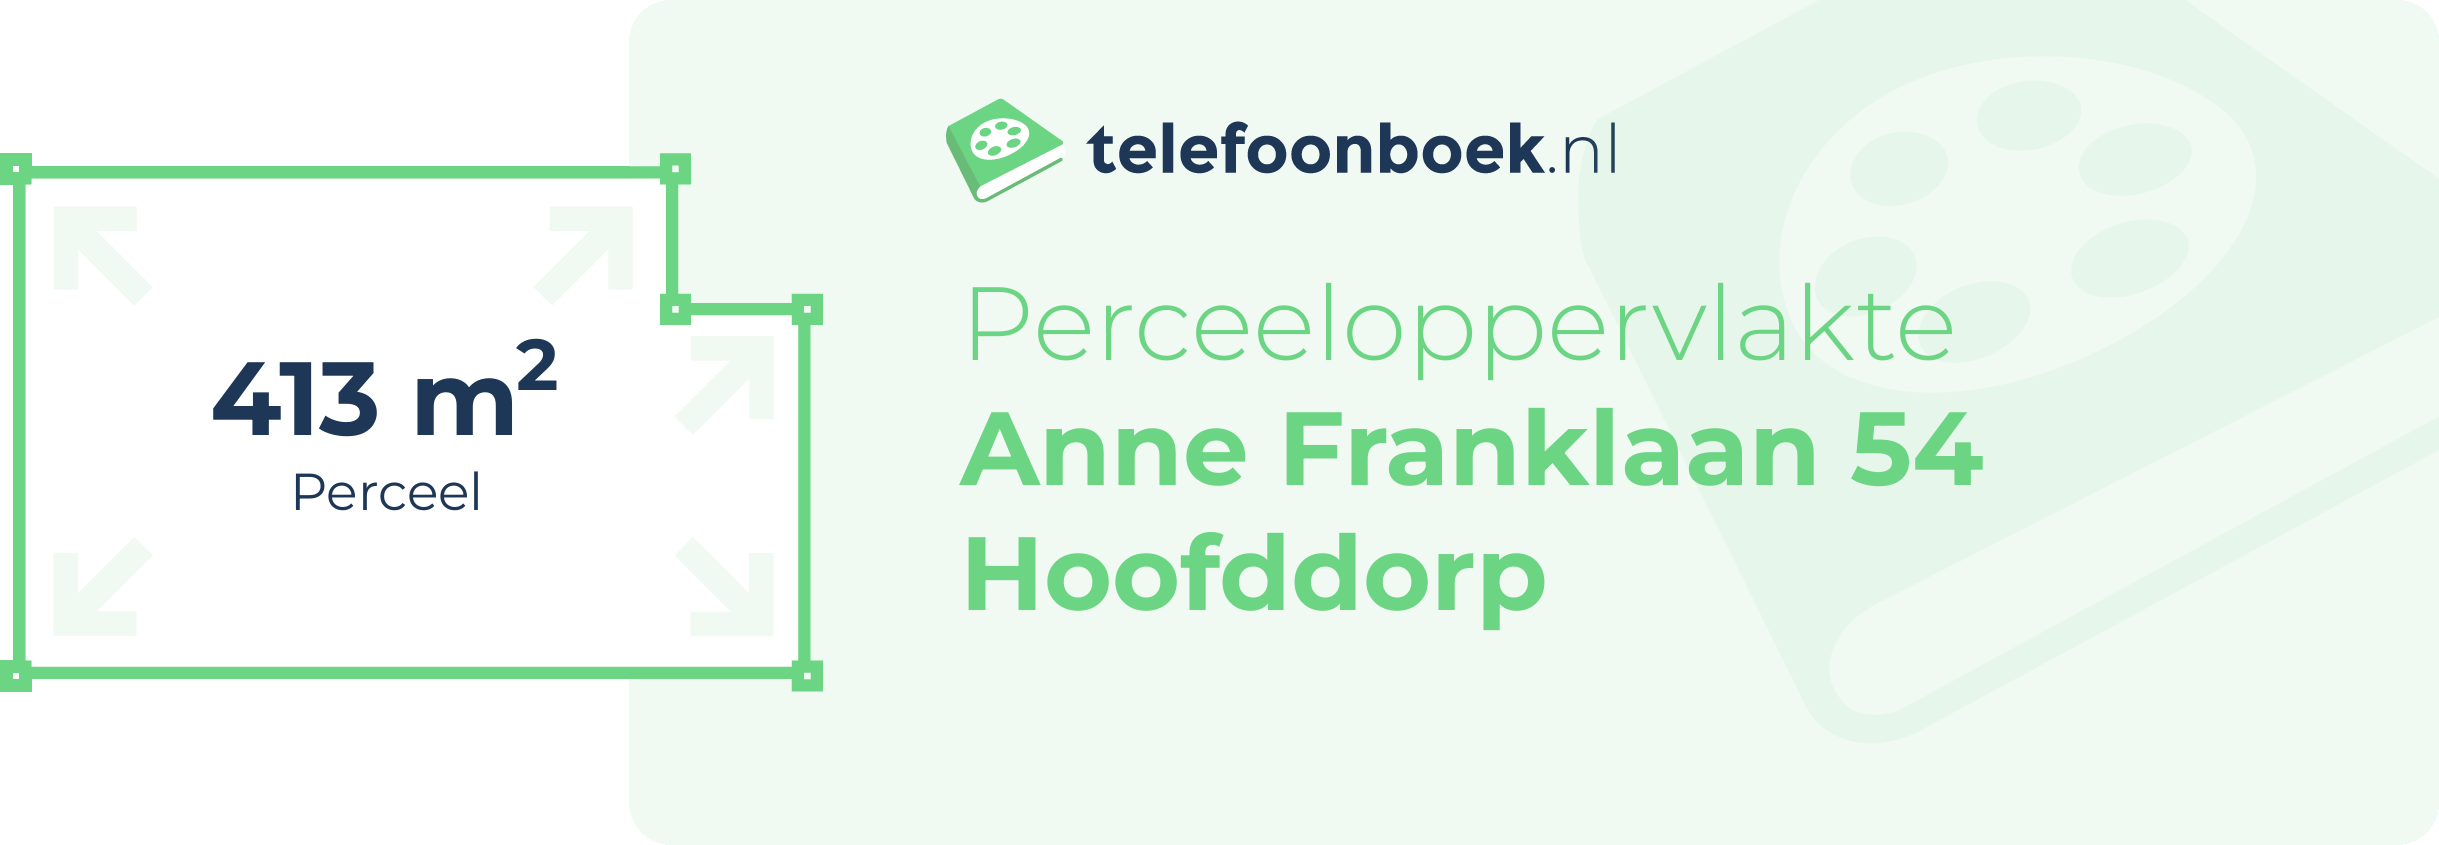 Perceeloppervlakte Anne Franklaan 54 Hoofddorp